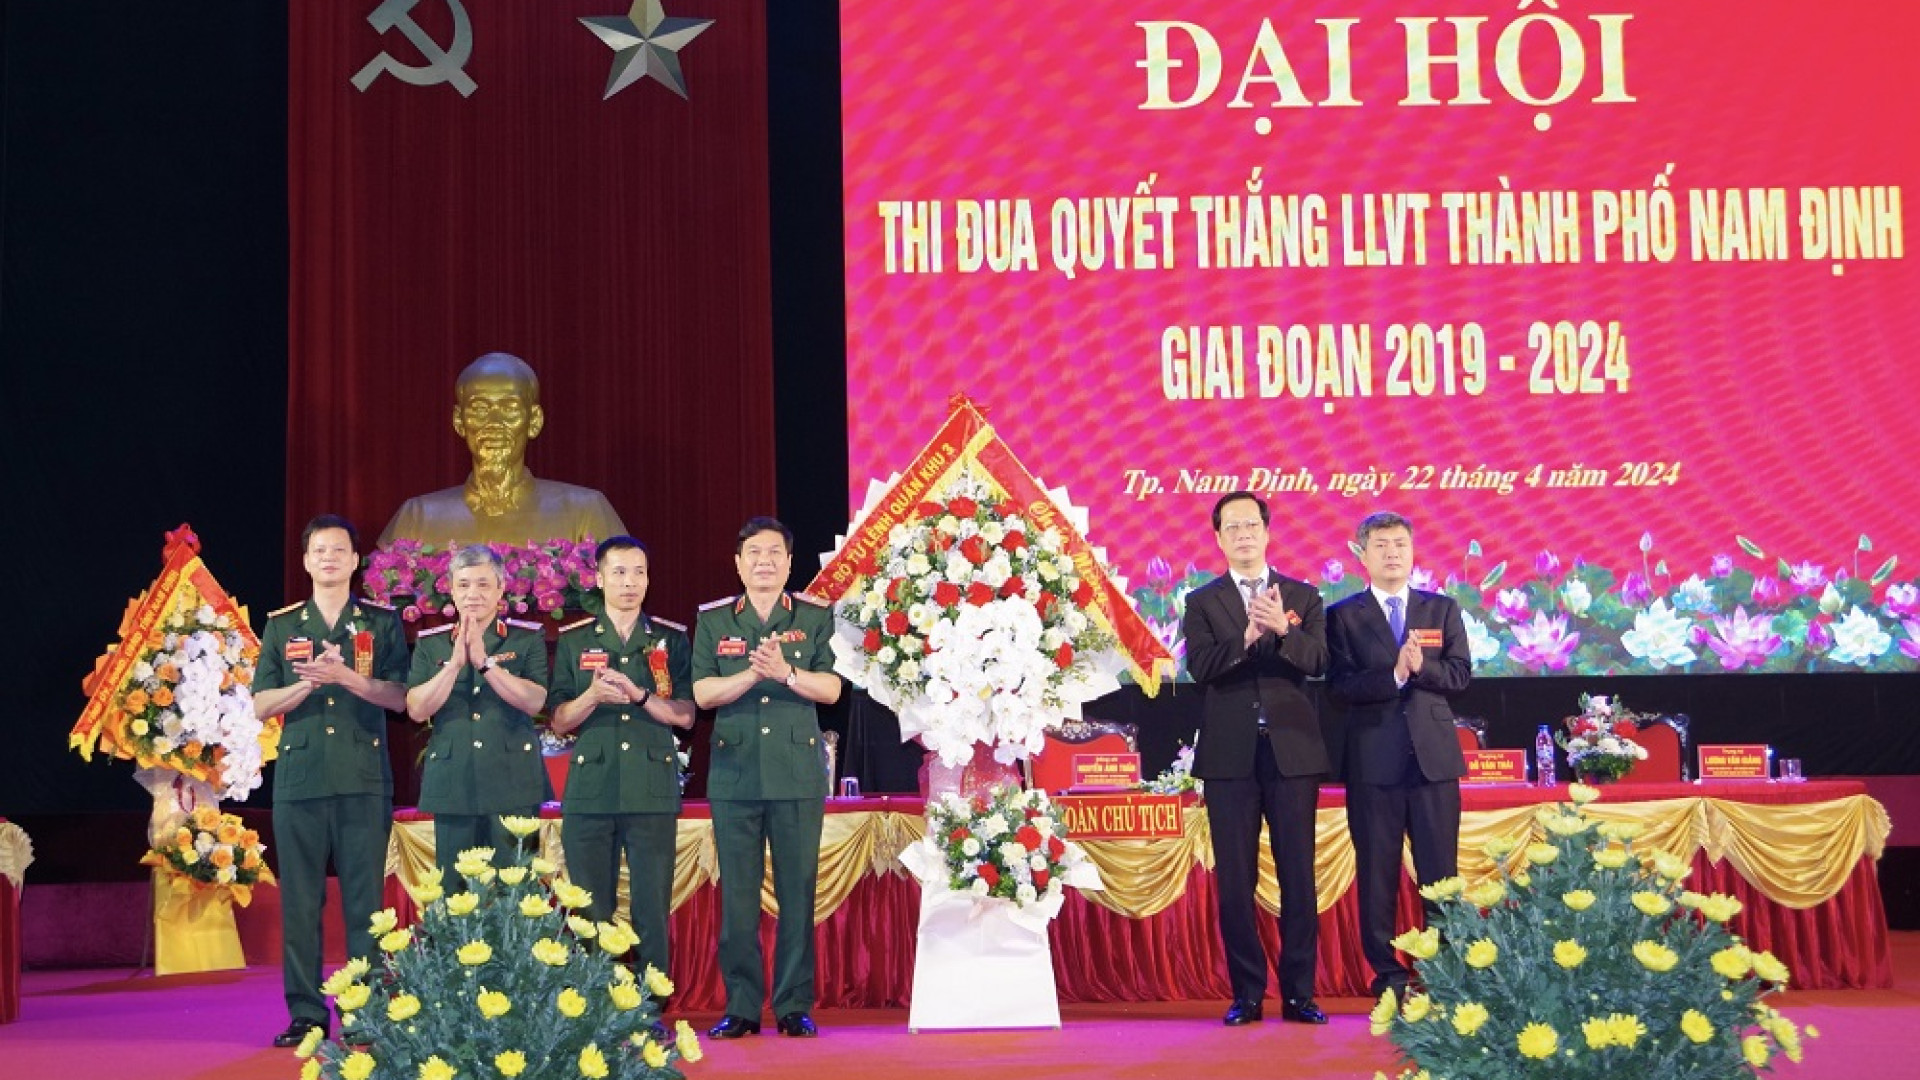 LLVT thành phố Nam Định tổ chức Đại hội thi đua Quyết thắng giai đoạn 2019-2024